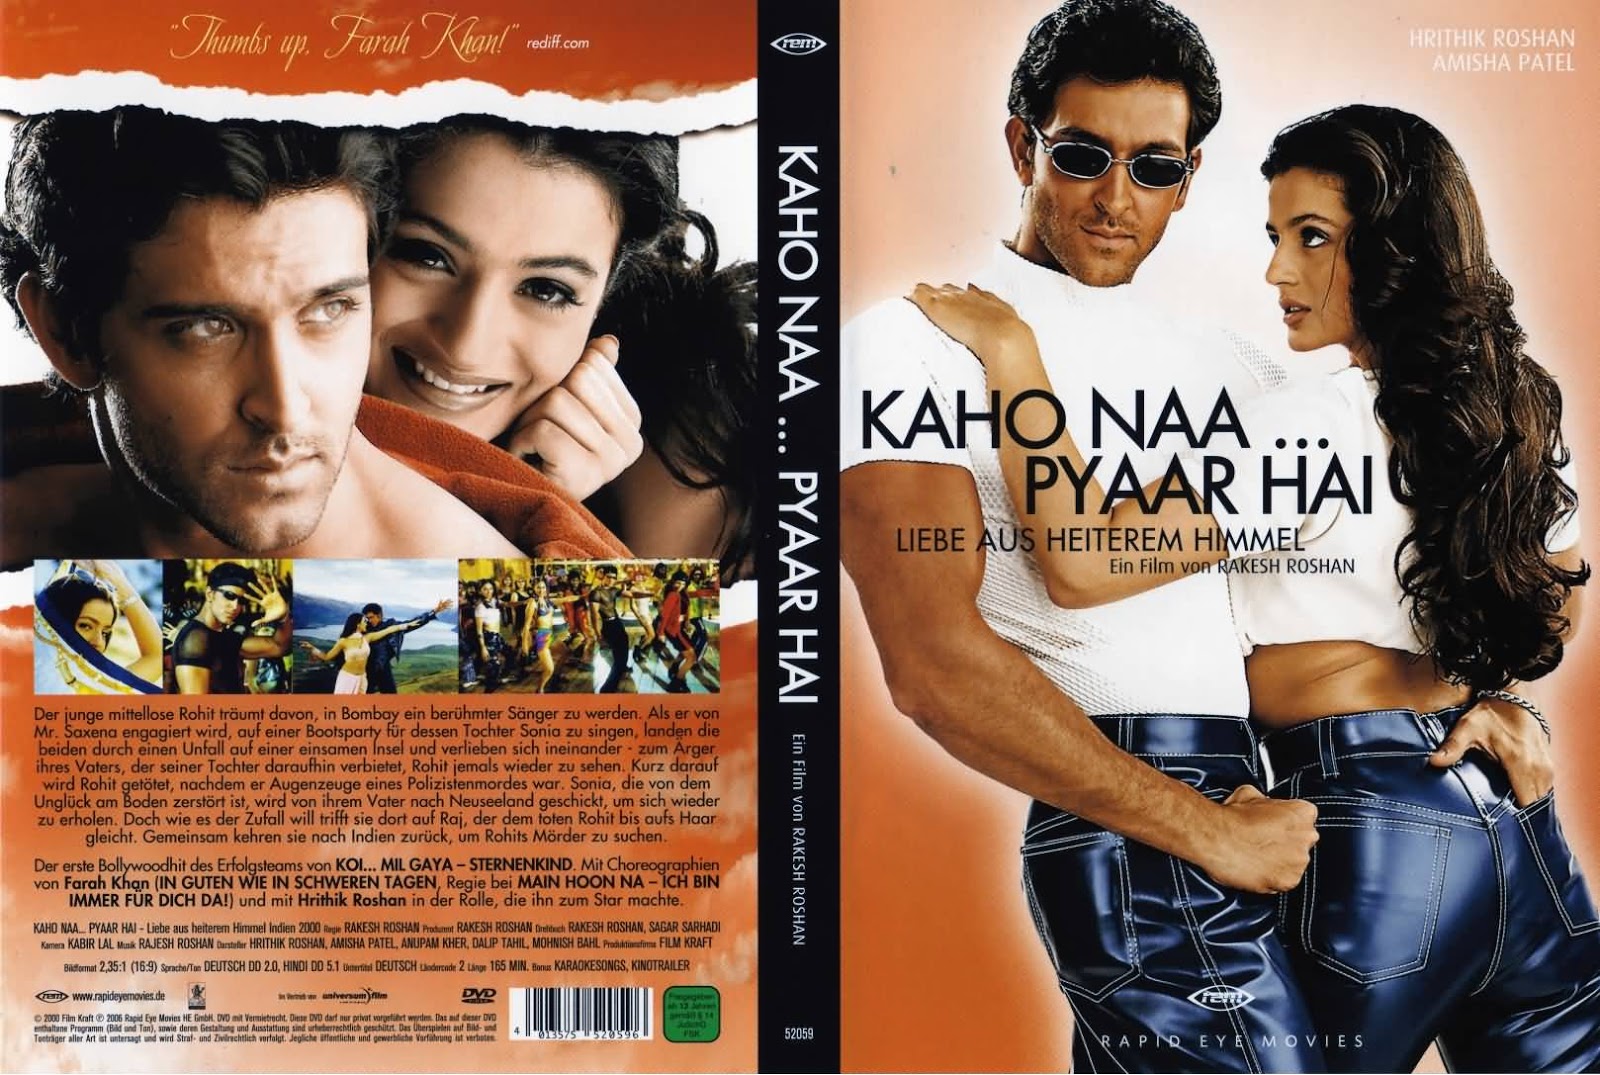 Pyaar Hai (2000) - обложка.